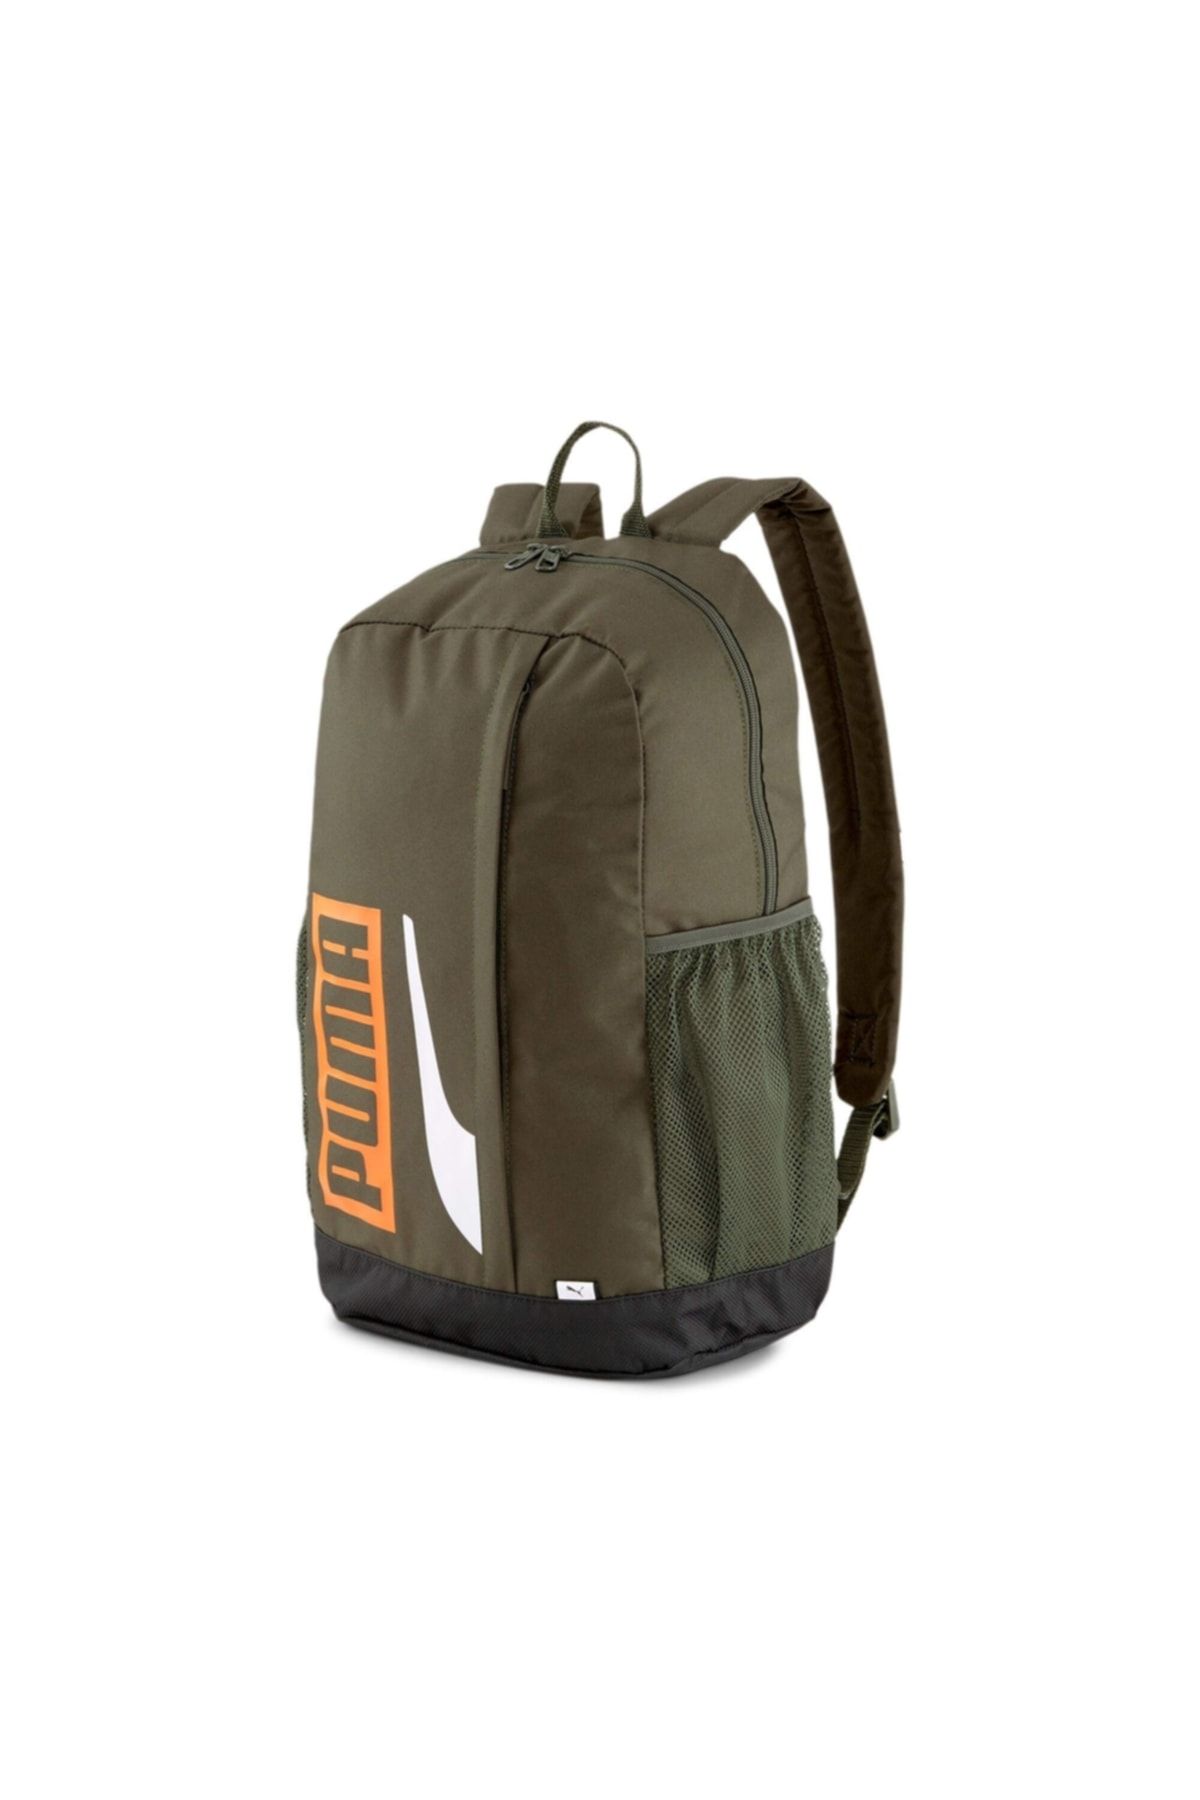 Puma Unisex Plus Backpack Iı Çanta